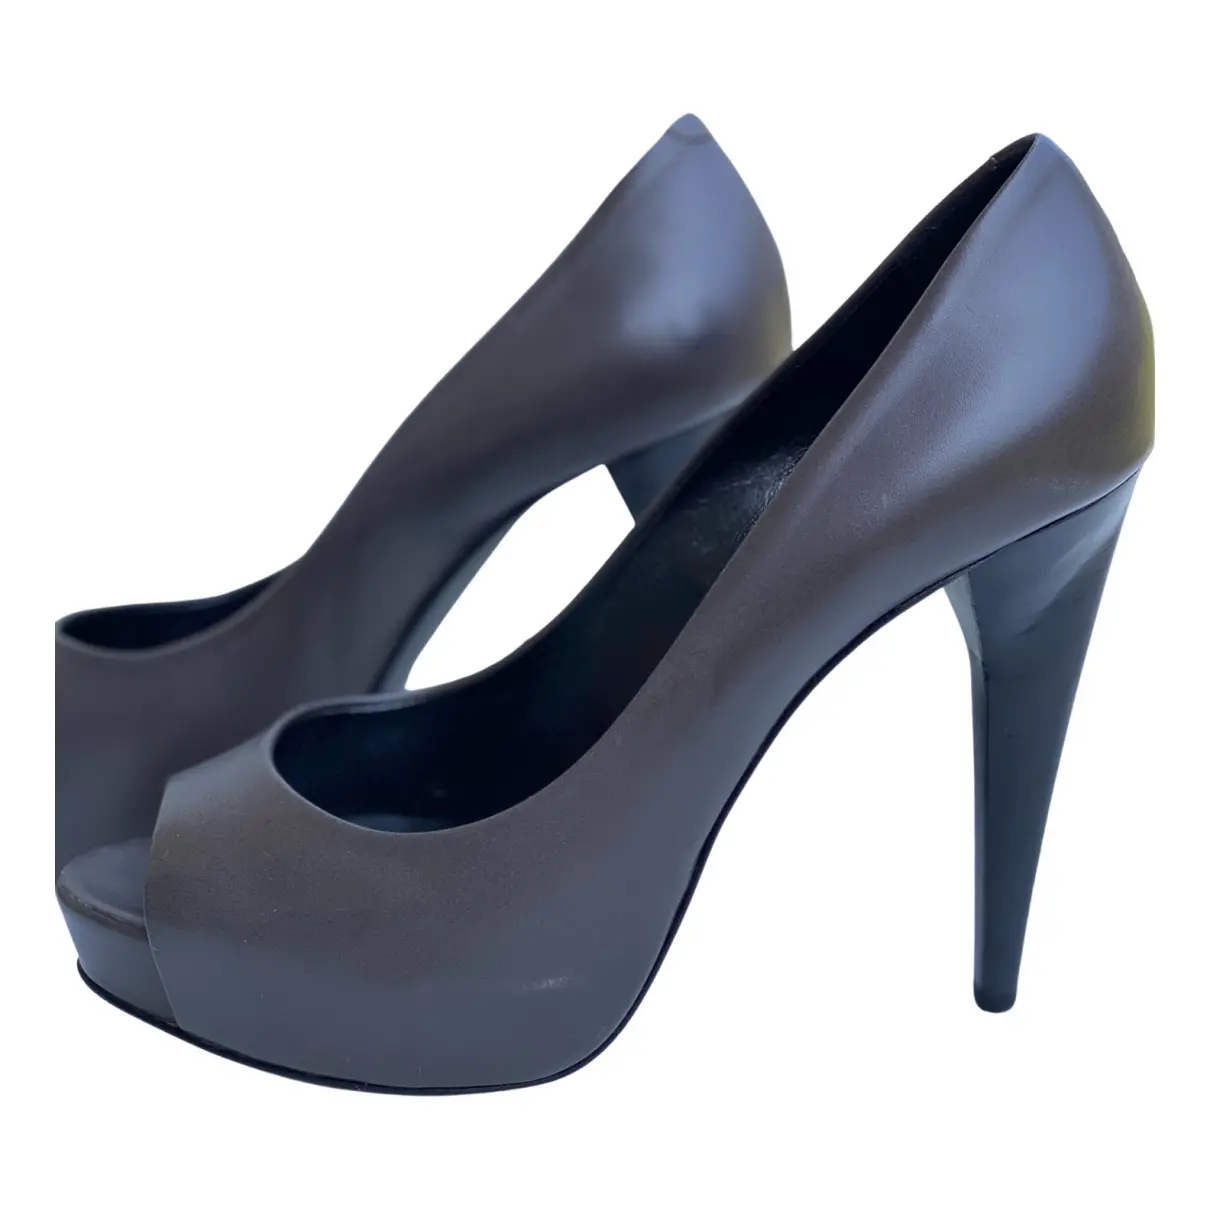 Leather heels Pierre Hardy